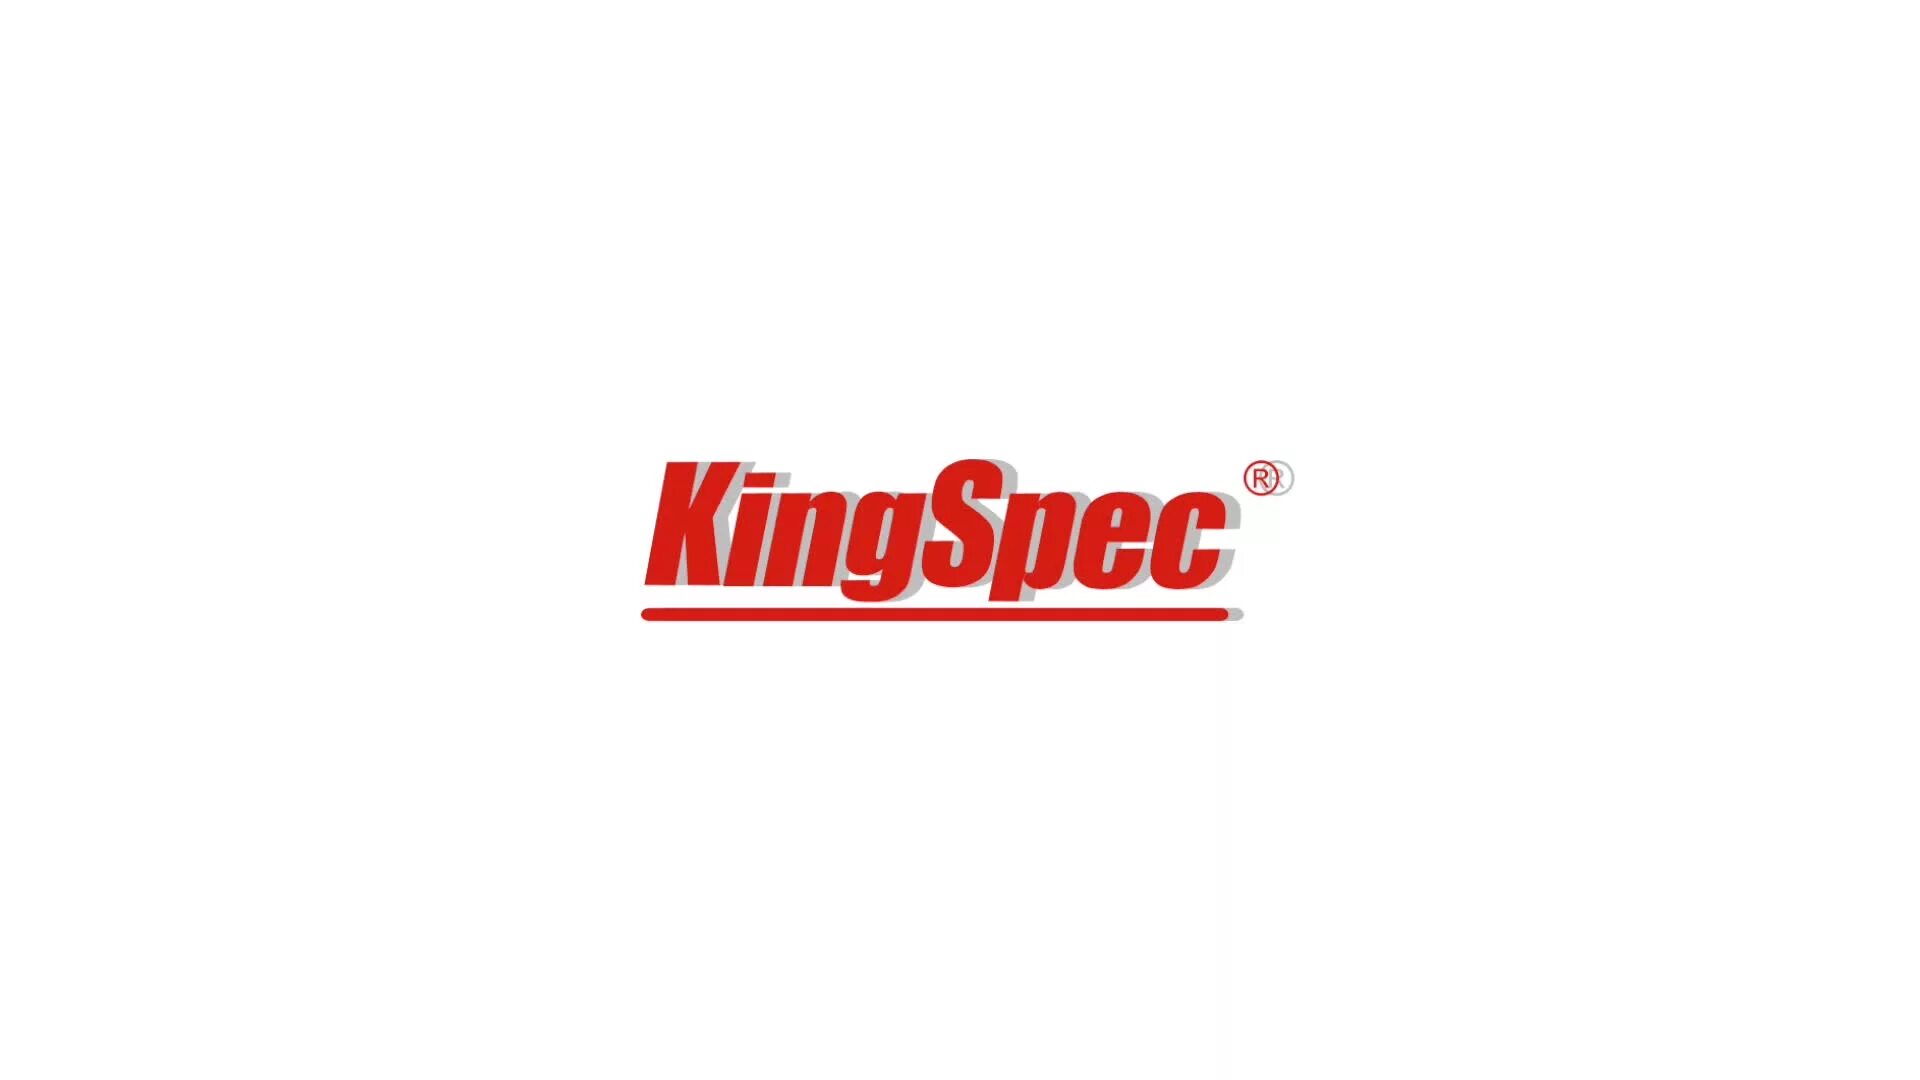 Кингспек. KINGSPEC. KINGSPEC лого. KINGSPEC логотип PNG. KINGSPEC логотип неподрезанный.